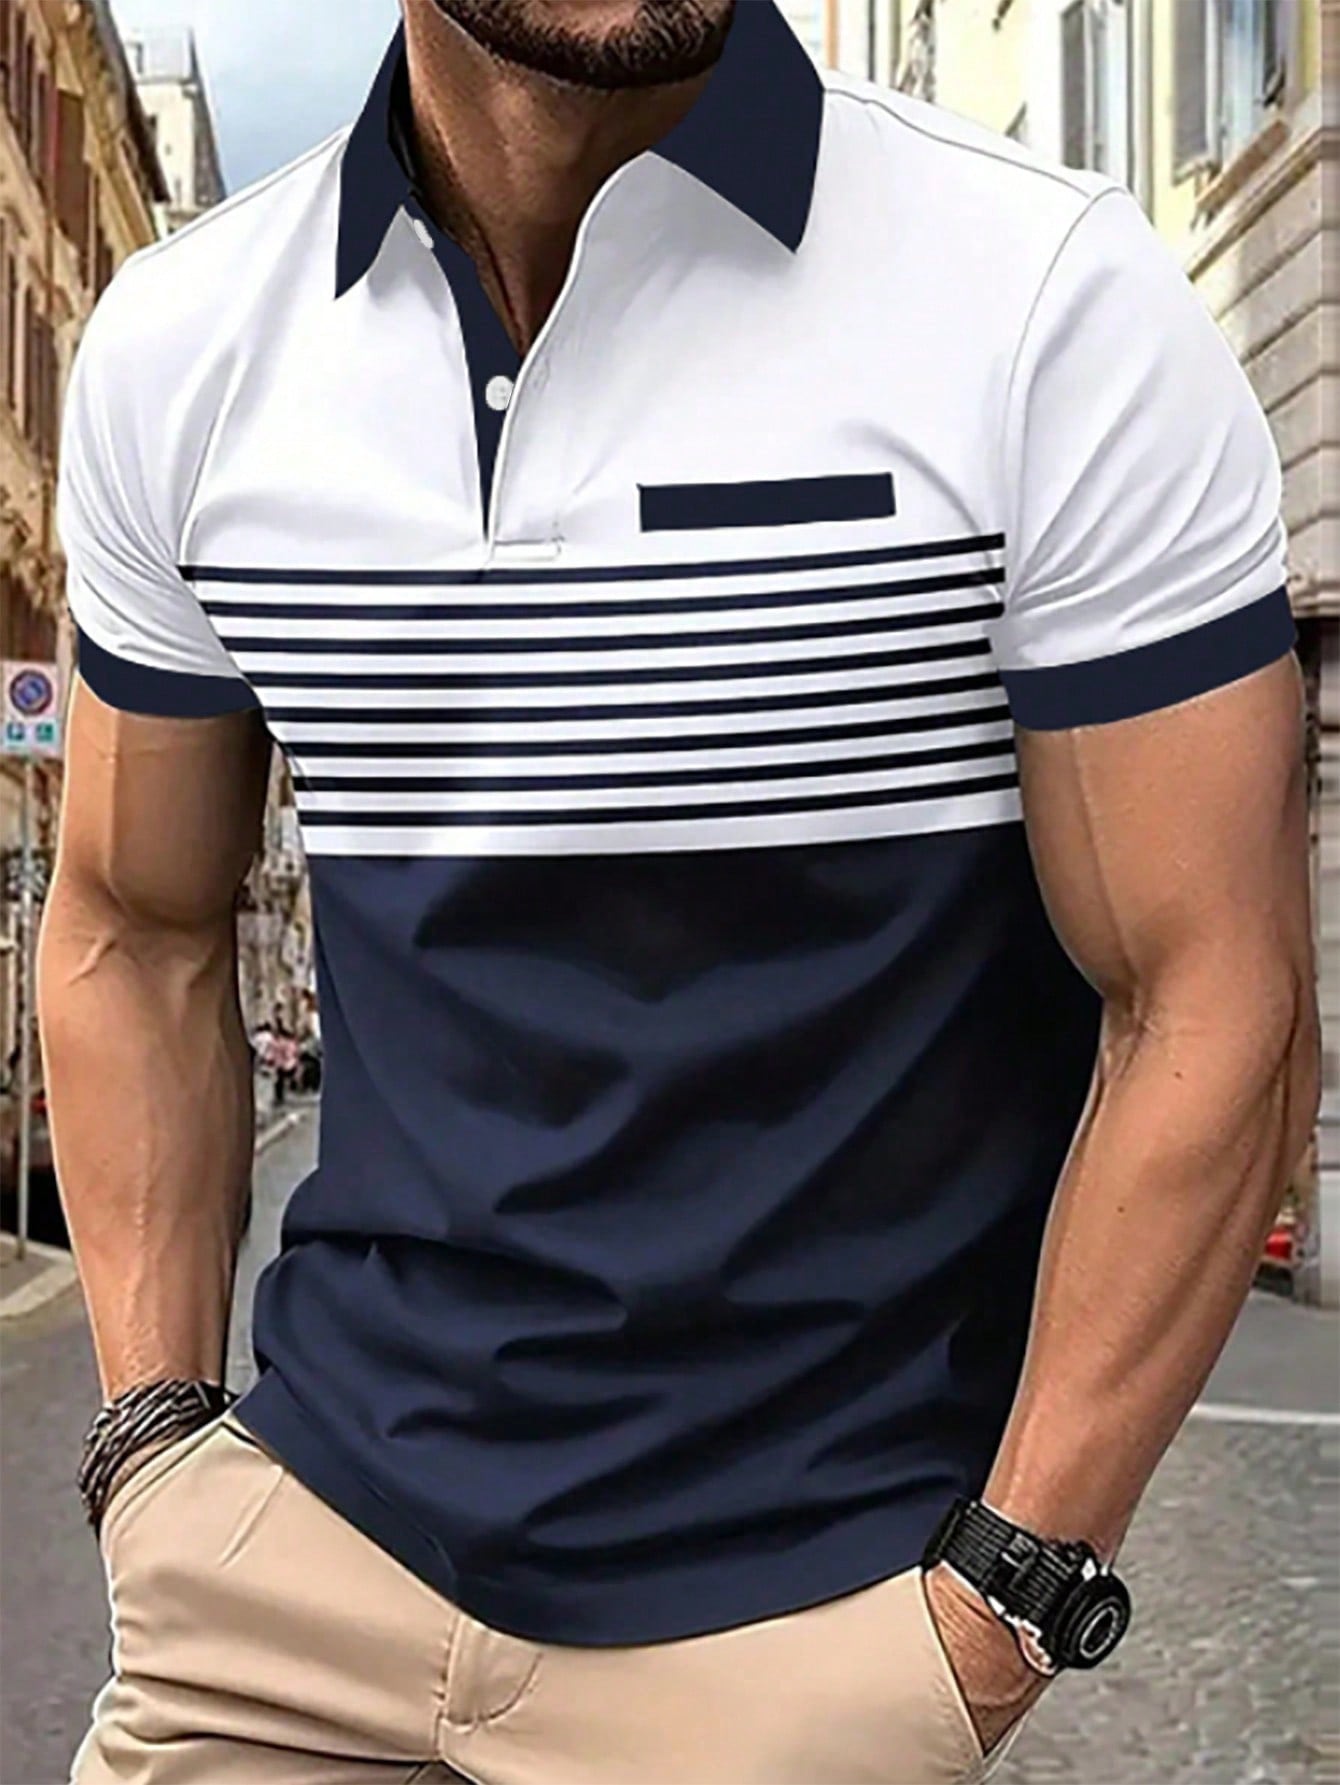 Мужская рубашка-поло контрастного цвета Manfinity Homme, белый рубашка поло для мальчика в полоску 80434 мош20 36 140